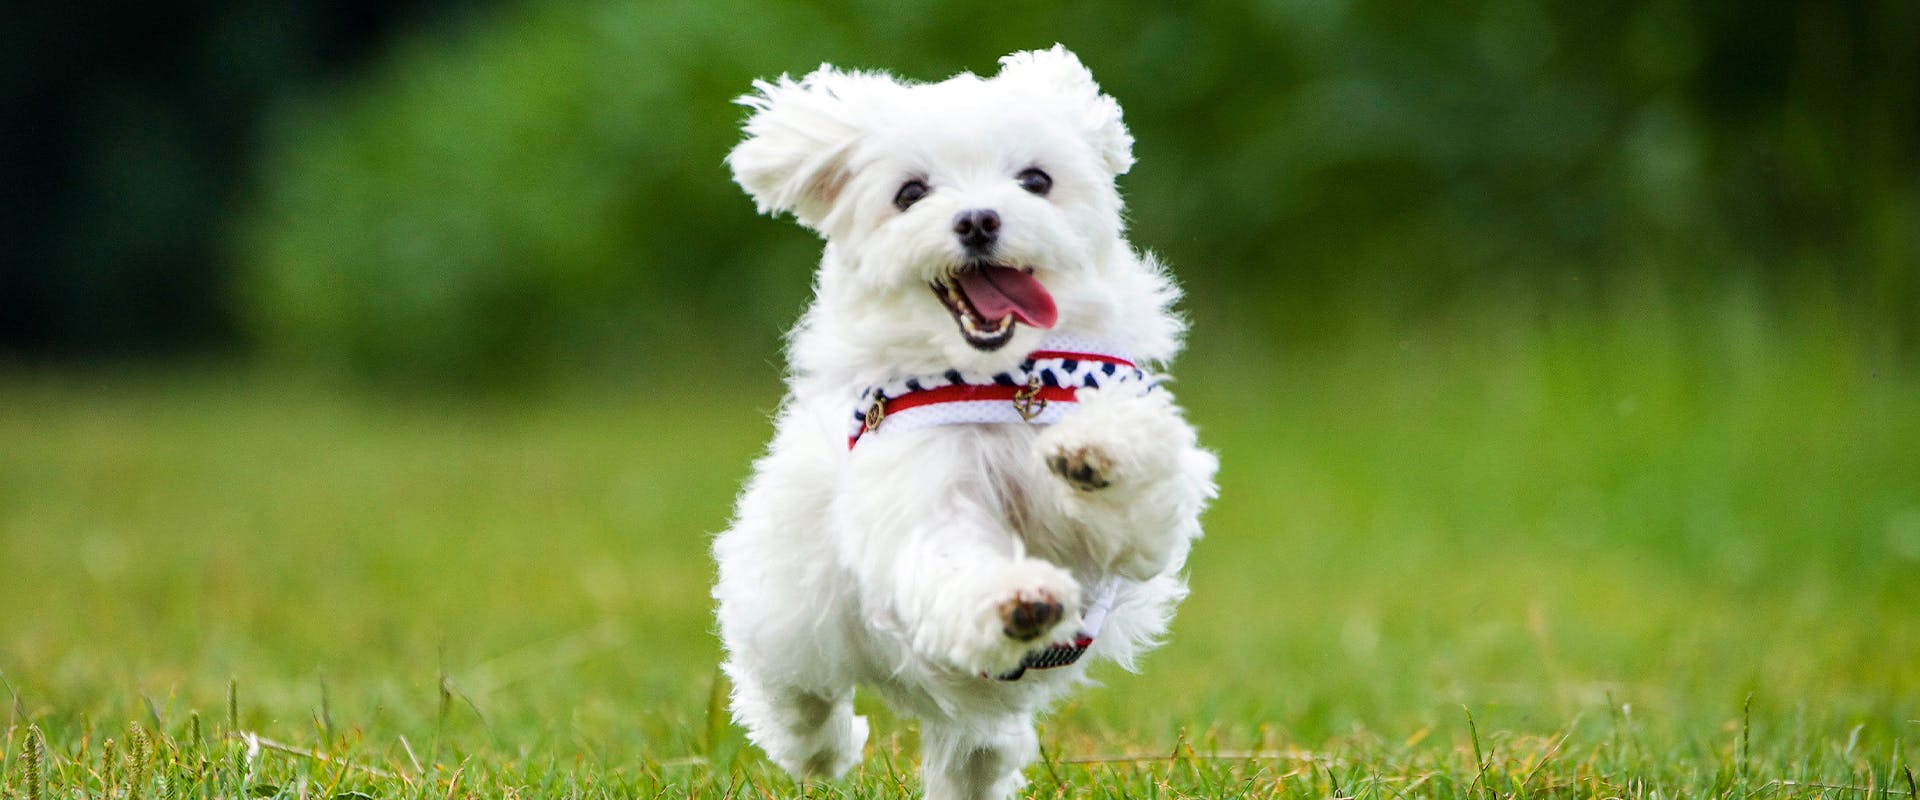 A cute Maltese dog running through a field